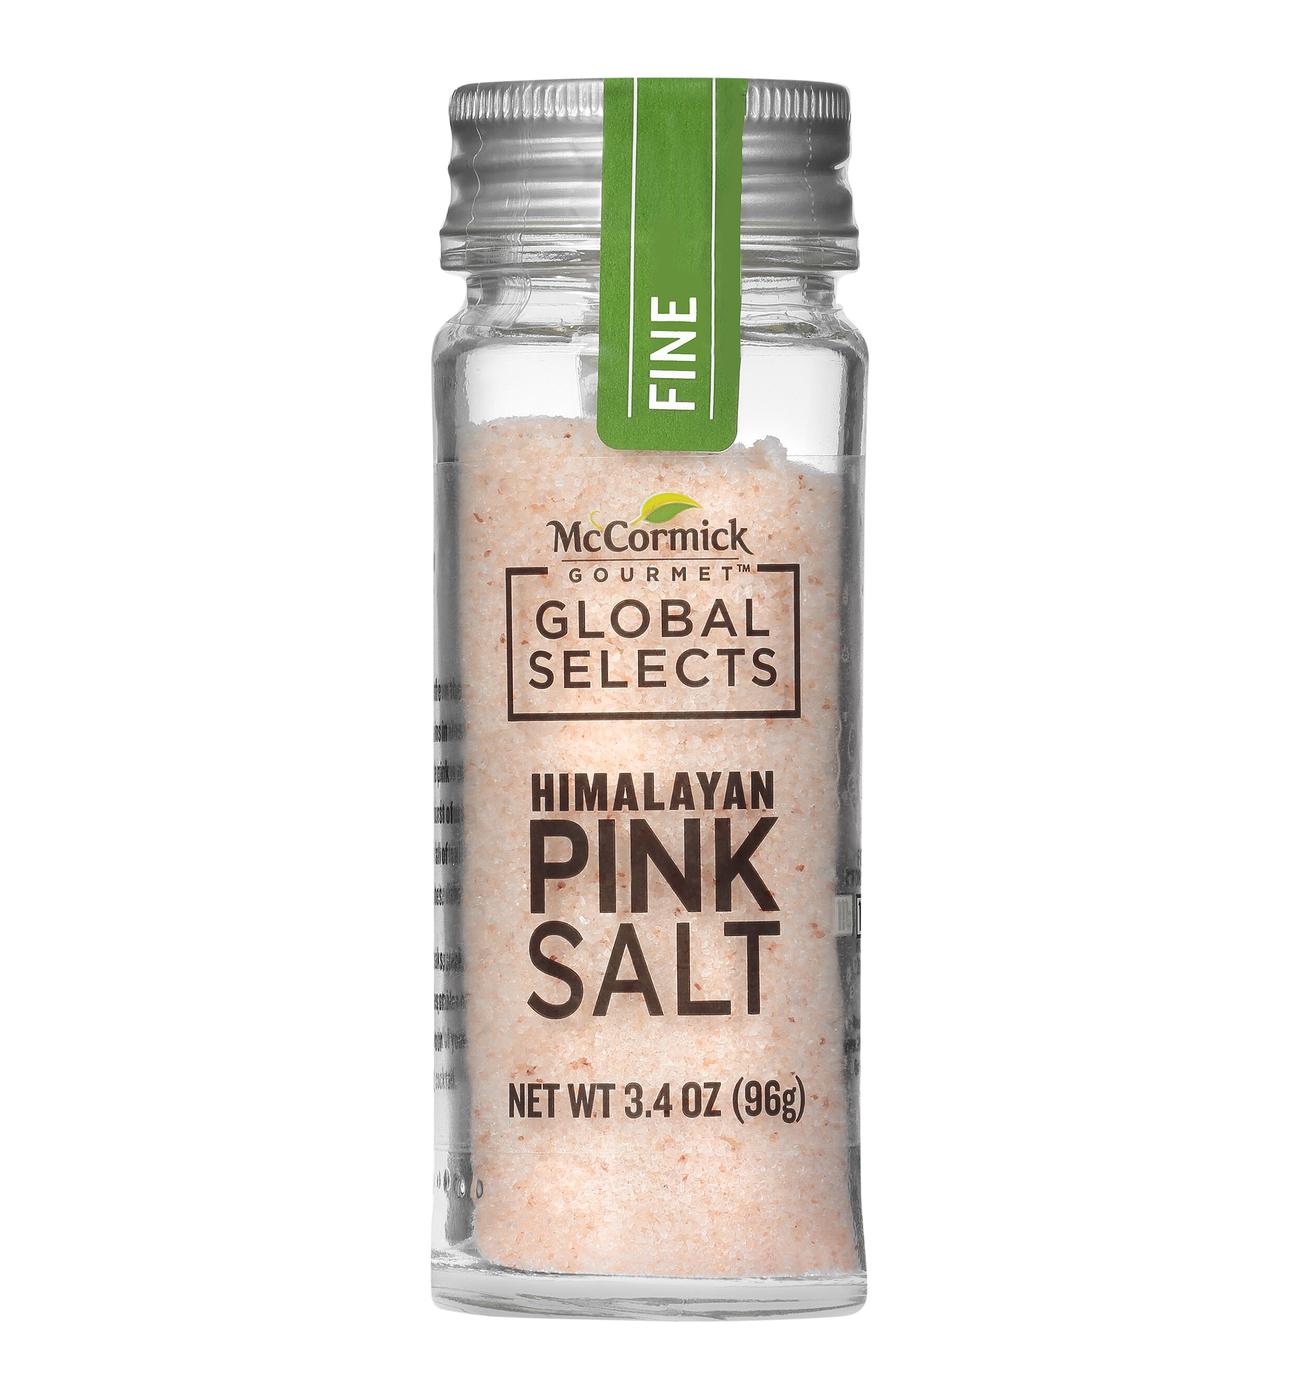 McCormick Gourmet Global Selects Himalayan Pink Salt; image 1 of 3